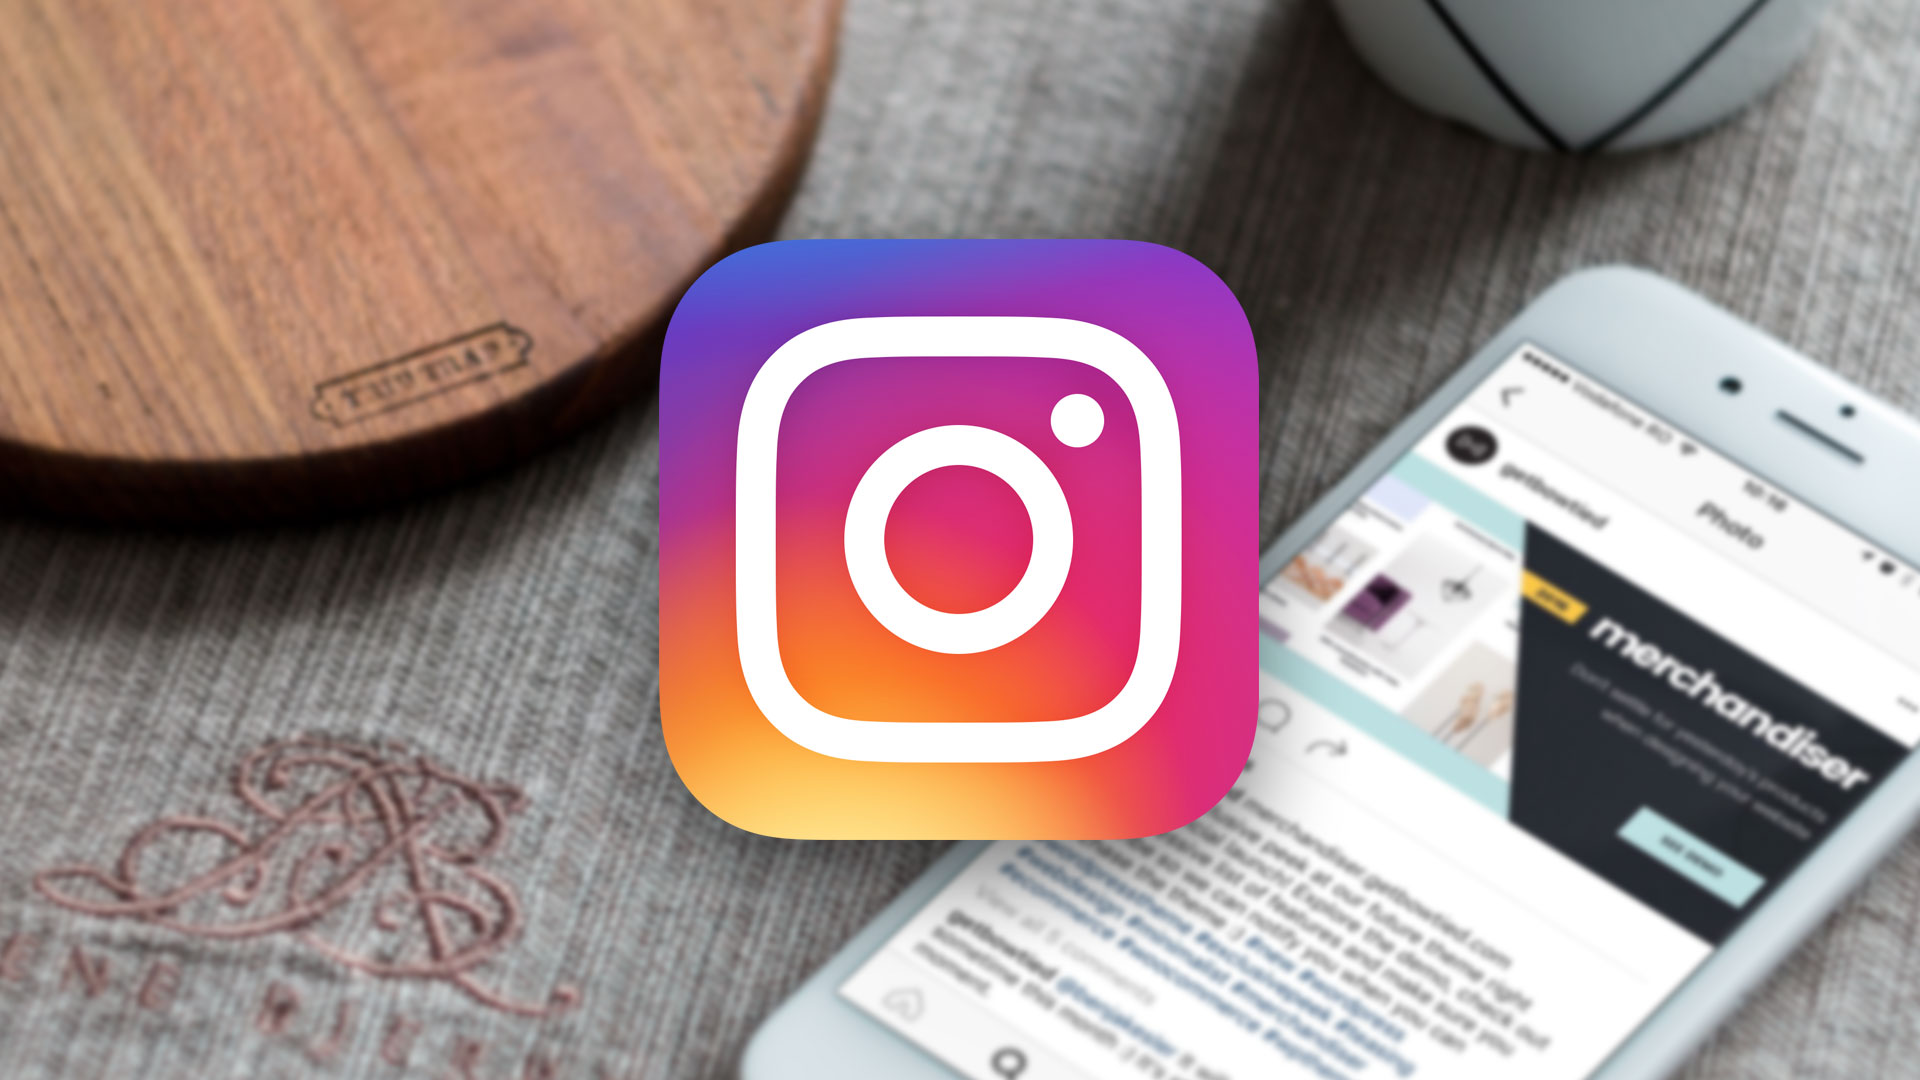 Instagram đang dự định tung tính năng mới cho phép theo dõi thời gian sử dụng ứng dụng